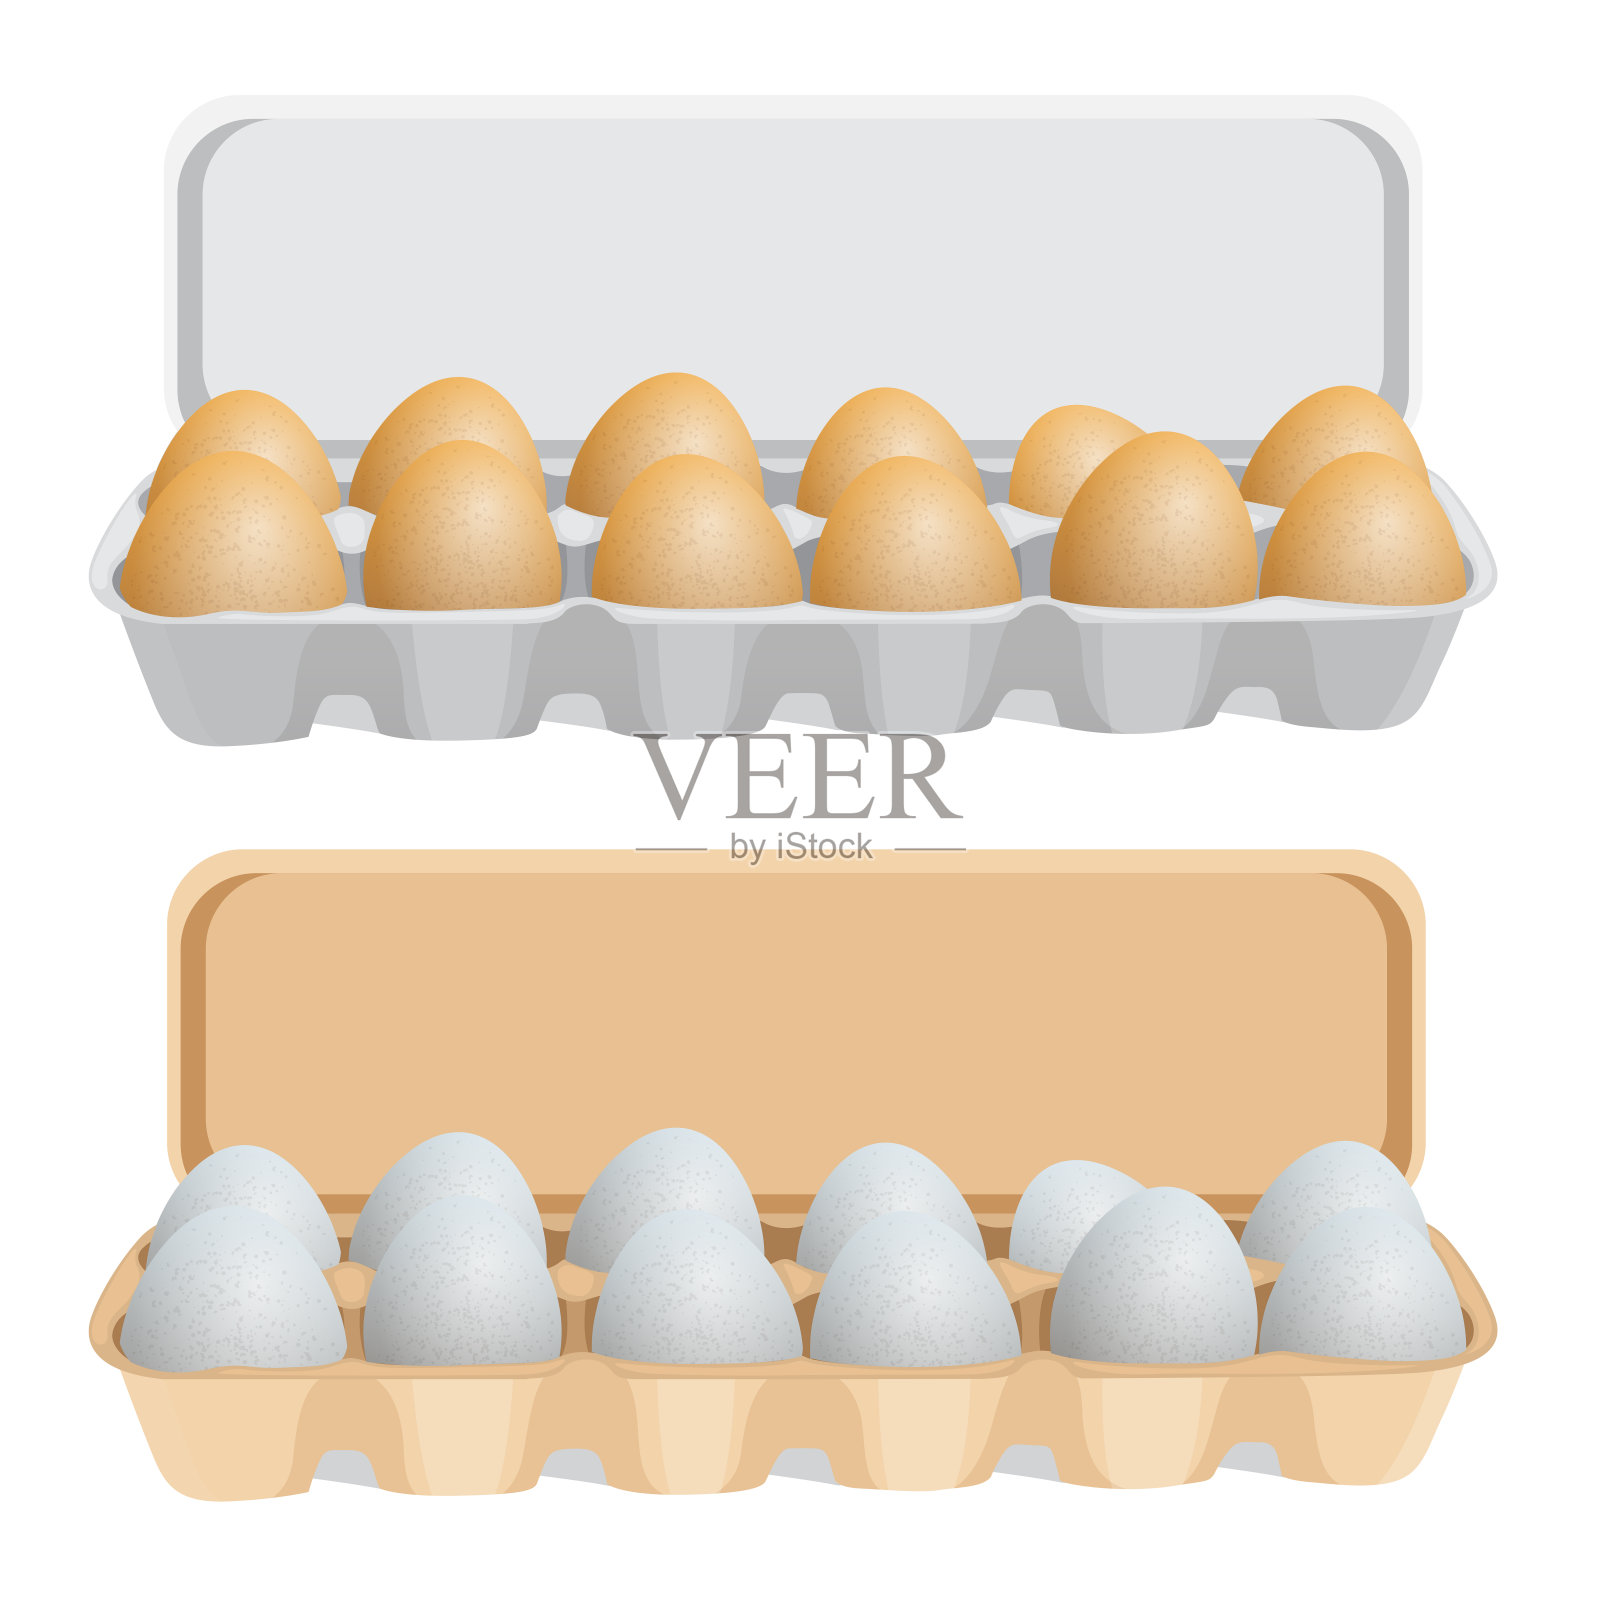 盒子里的新鲜鸡蛋插画图片素材